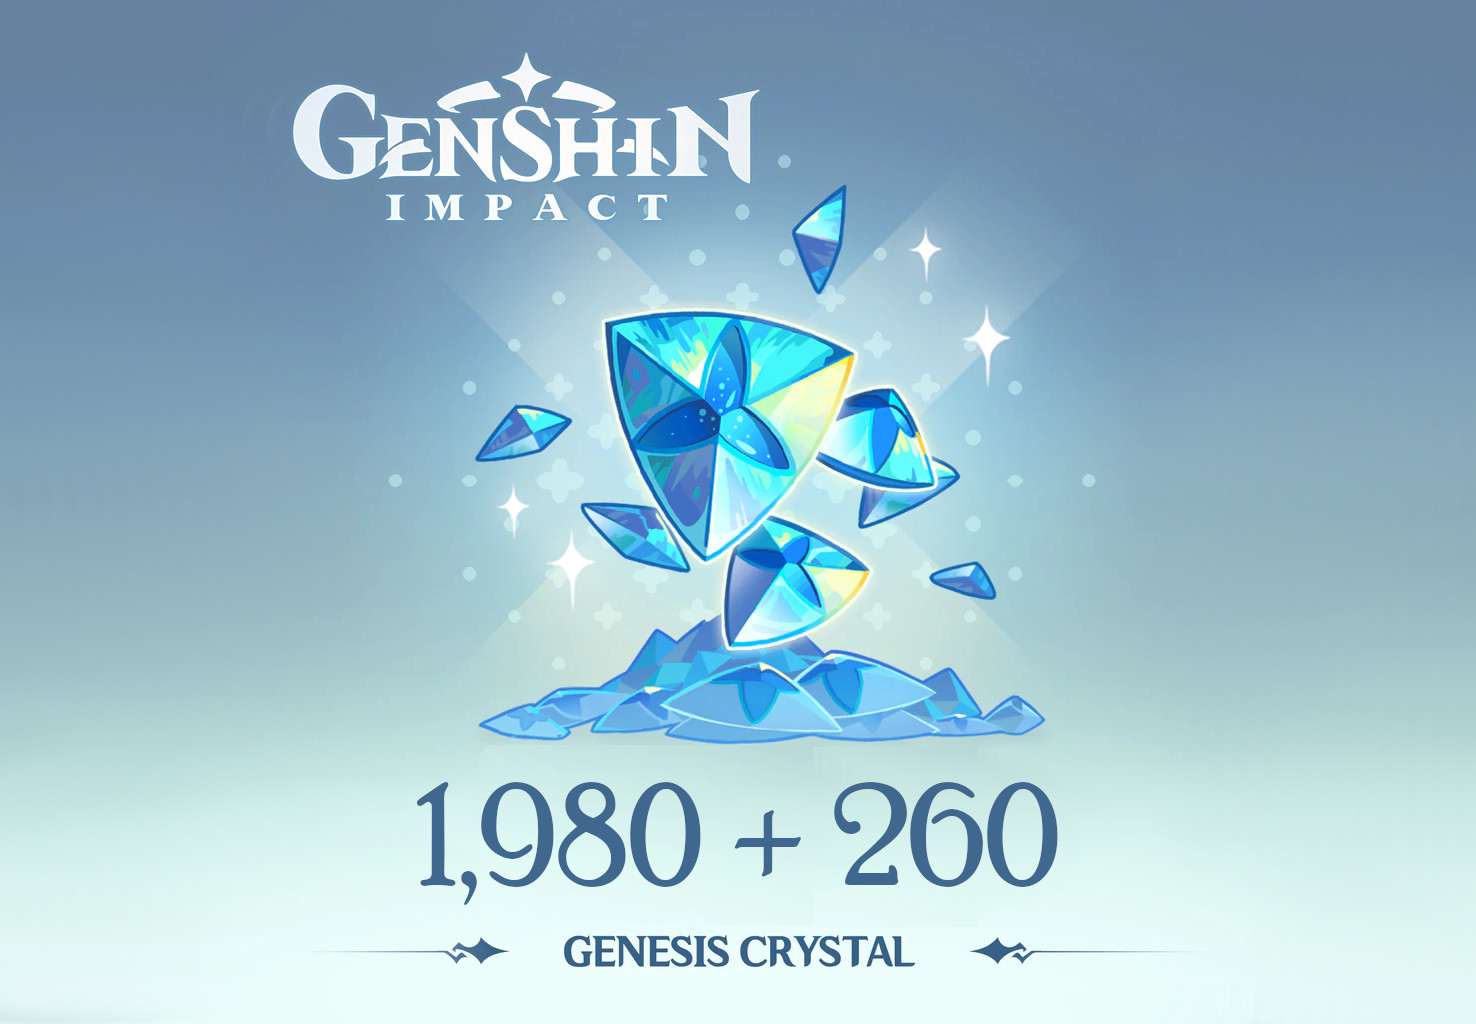 Genshin Impact - 1,980 + 260 Genesis Crystals Reidos Voucher, 33.9 usd